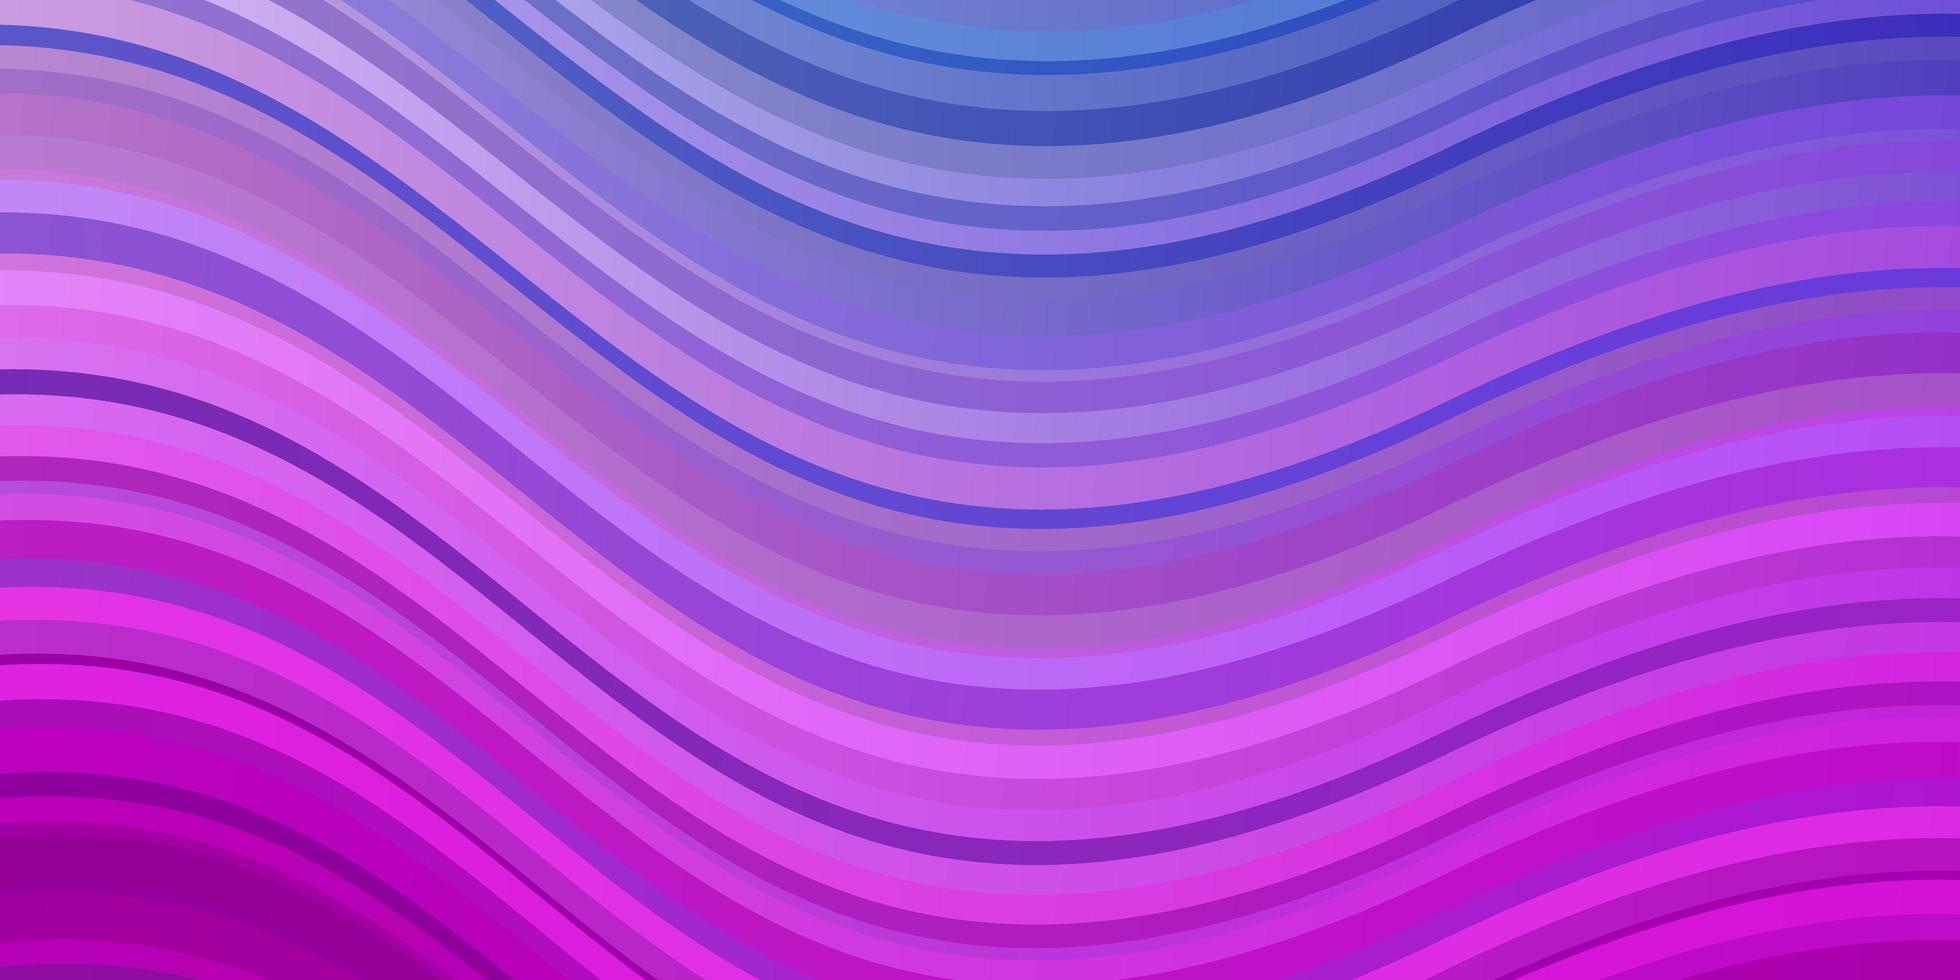 fundo vector rosa claro, azul com linhas curvas.